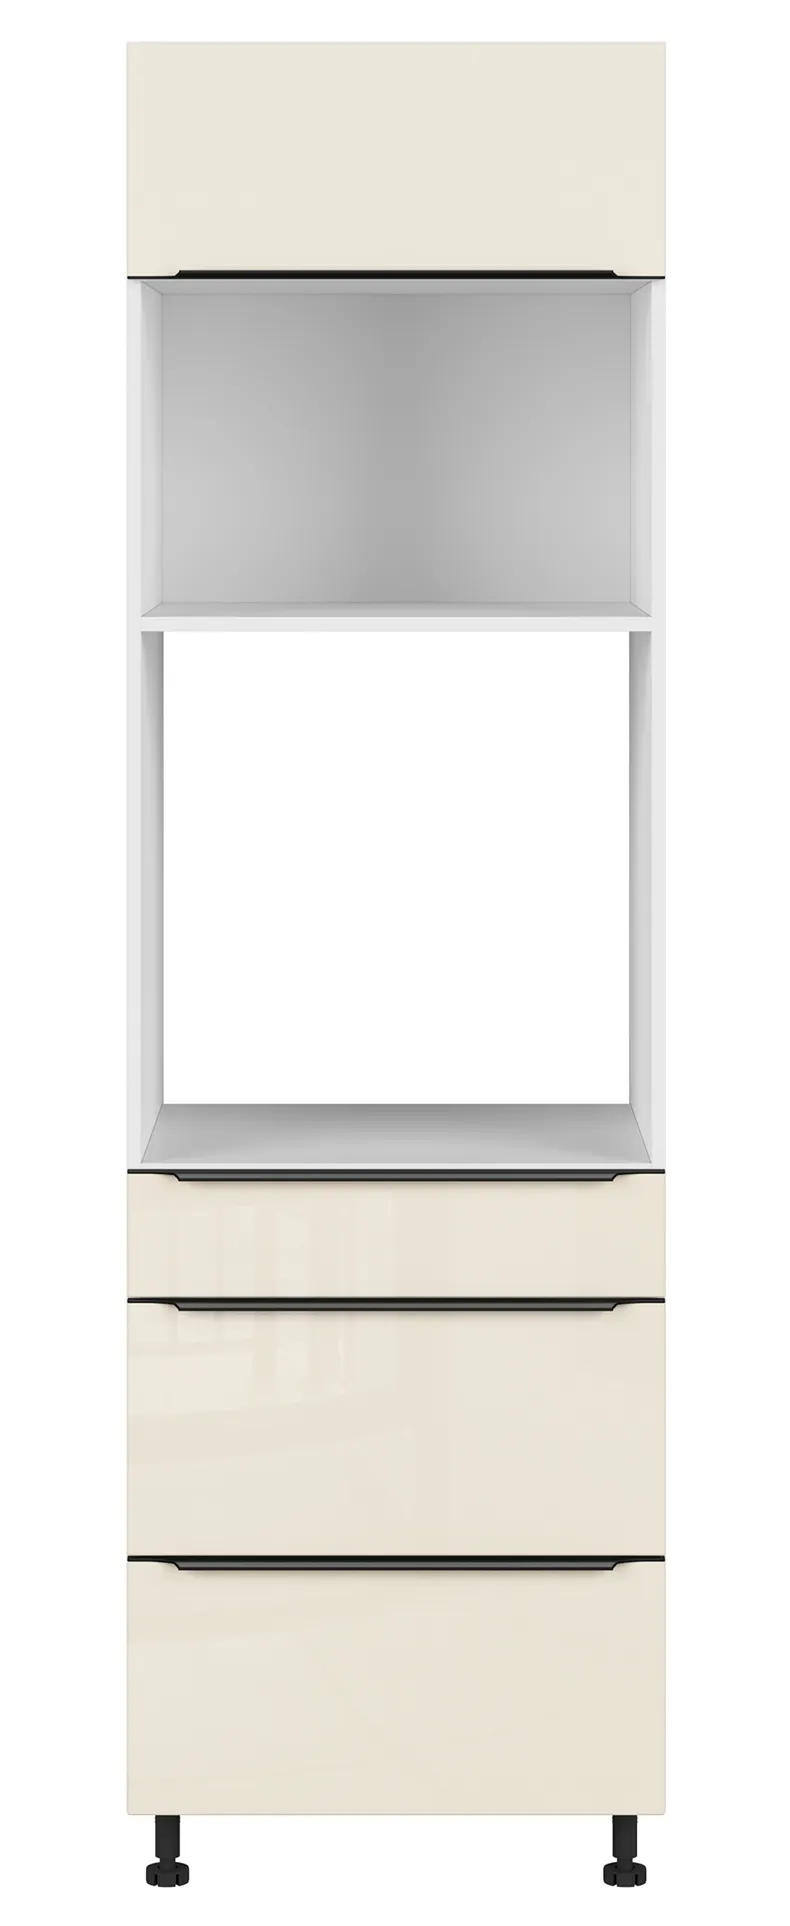 BRW Sole L6 60 см кухонна шафа для духової шафи з висувними ящиками магнолія перлина, альпійський білий/магнолія перламутровий FM_DPS_60/207_2SMB/SMB/O-BAL/MAPE фото №1